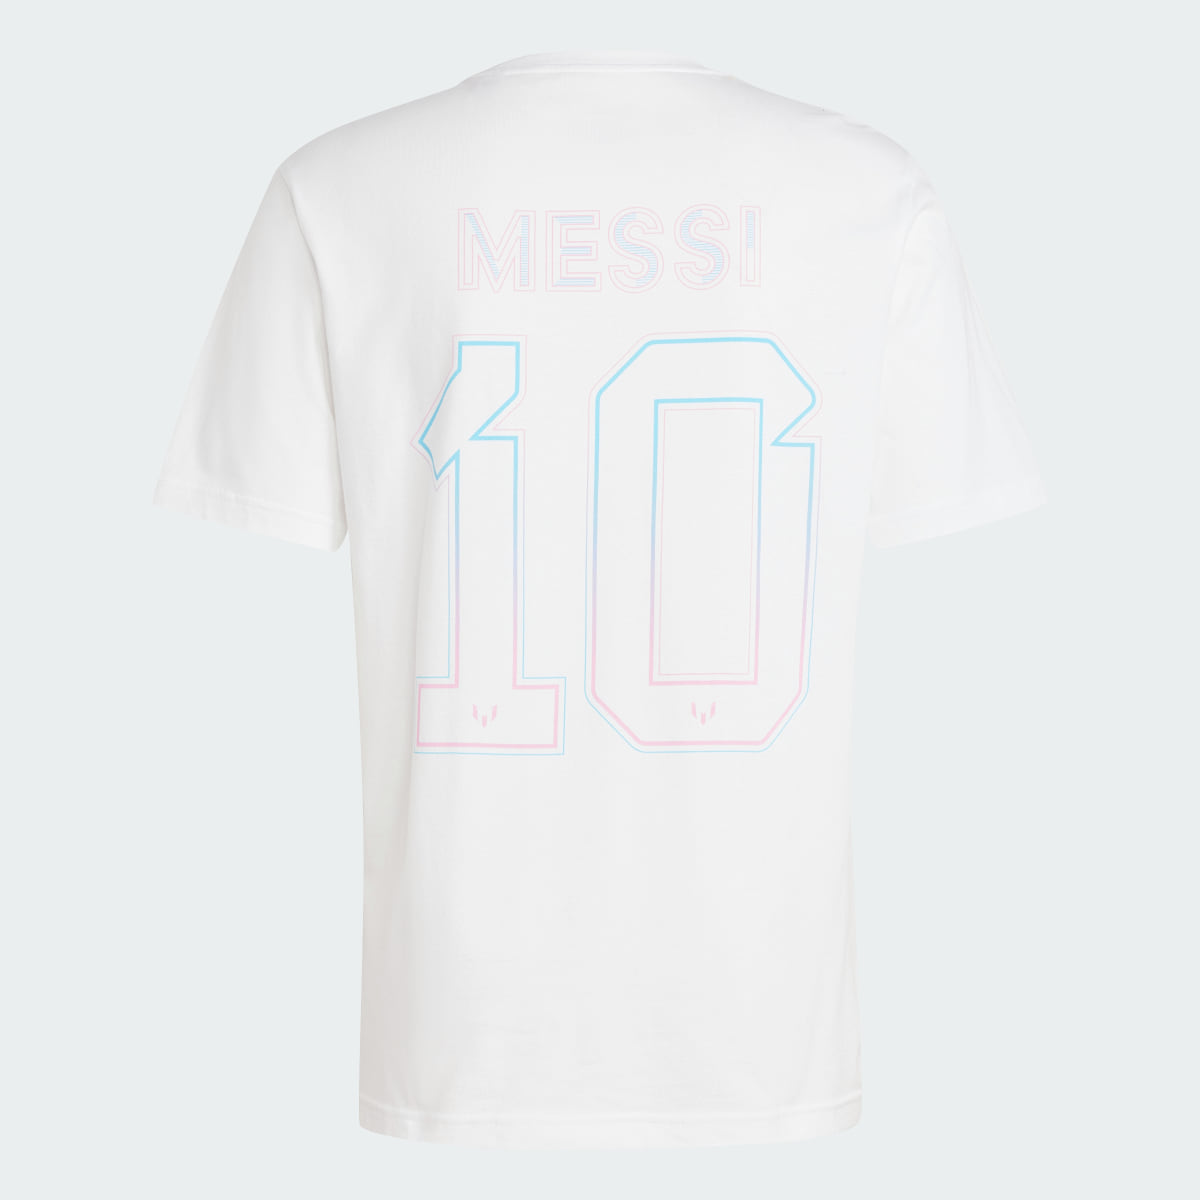 Adidas Messi Tee. 5